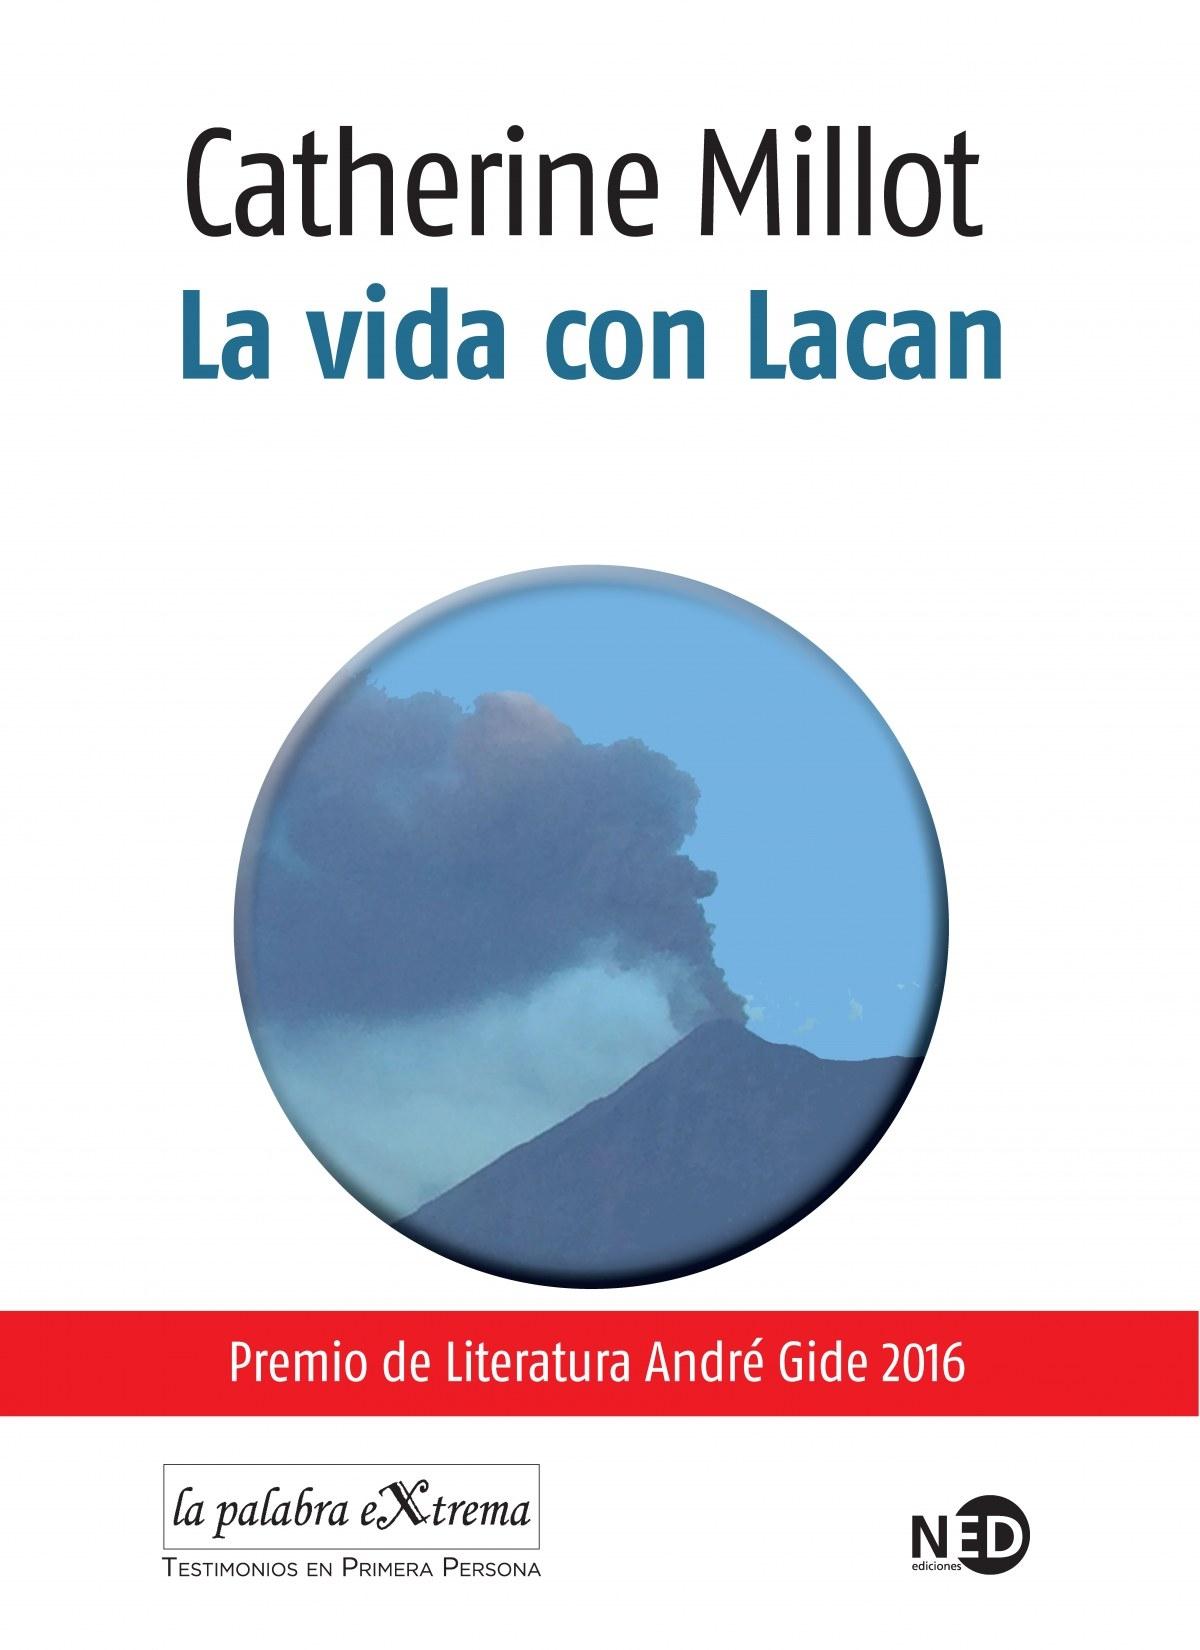 Vida con Lacan, La  "Pemio Literatura André Gide 2016"